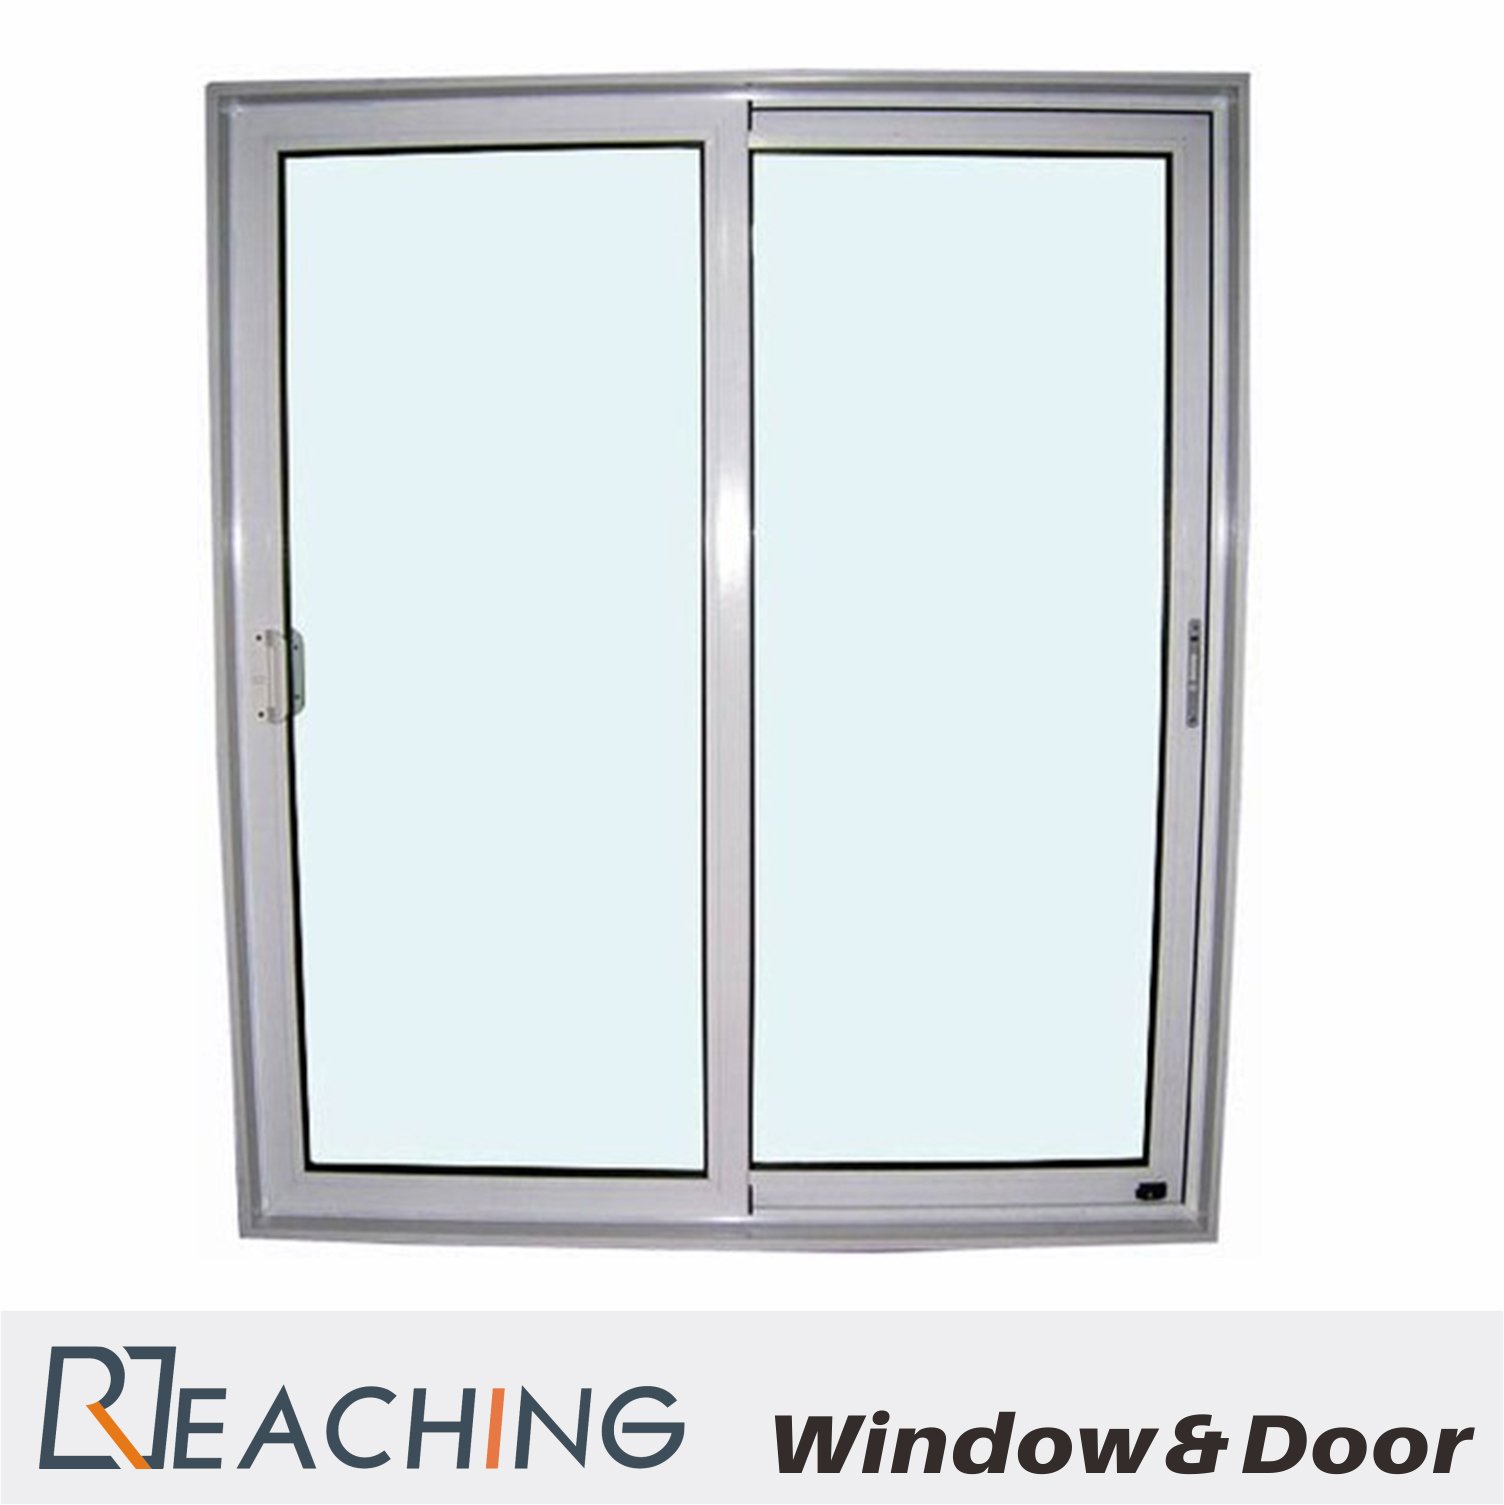 Moderno simplificar el material de aluminio de cristal laminado de la ventana como Requirment